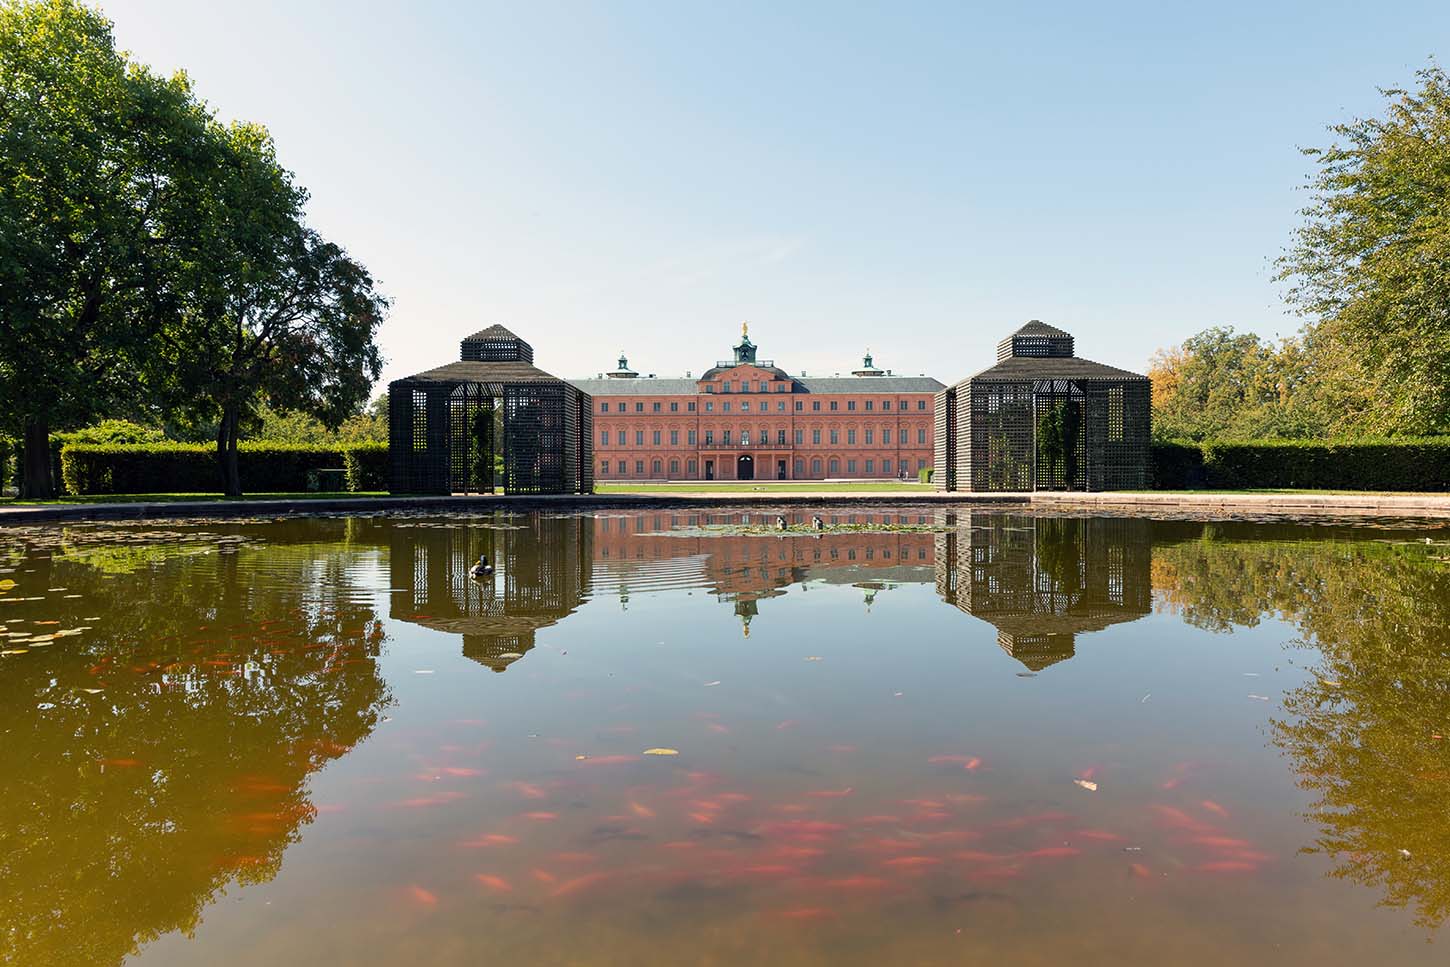 Rastatt castle with pond in castle garden